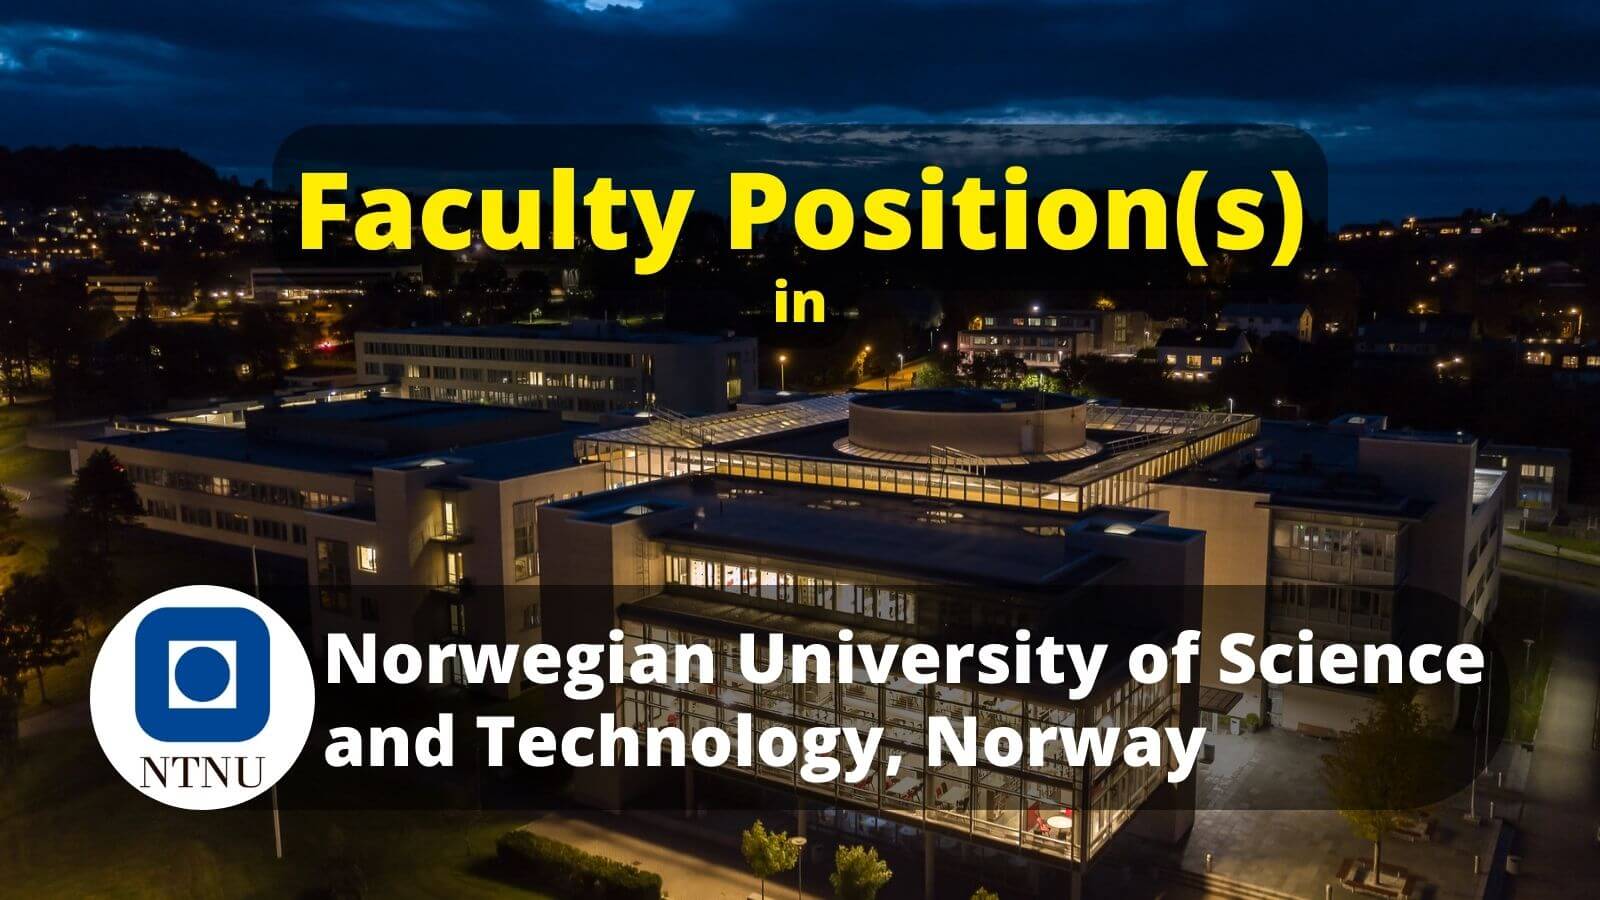 Faculty positions vacancies in NTNU Norway